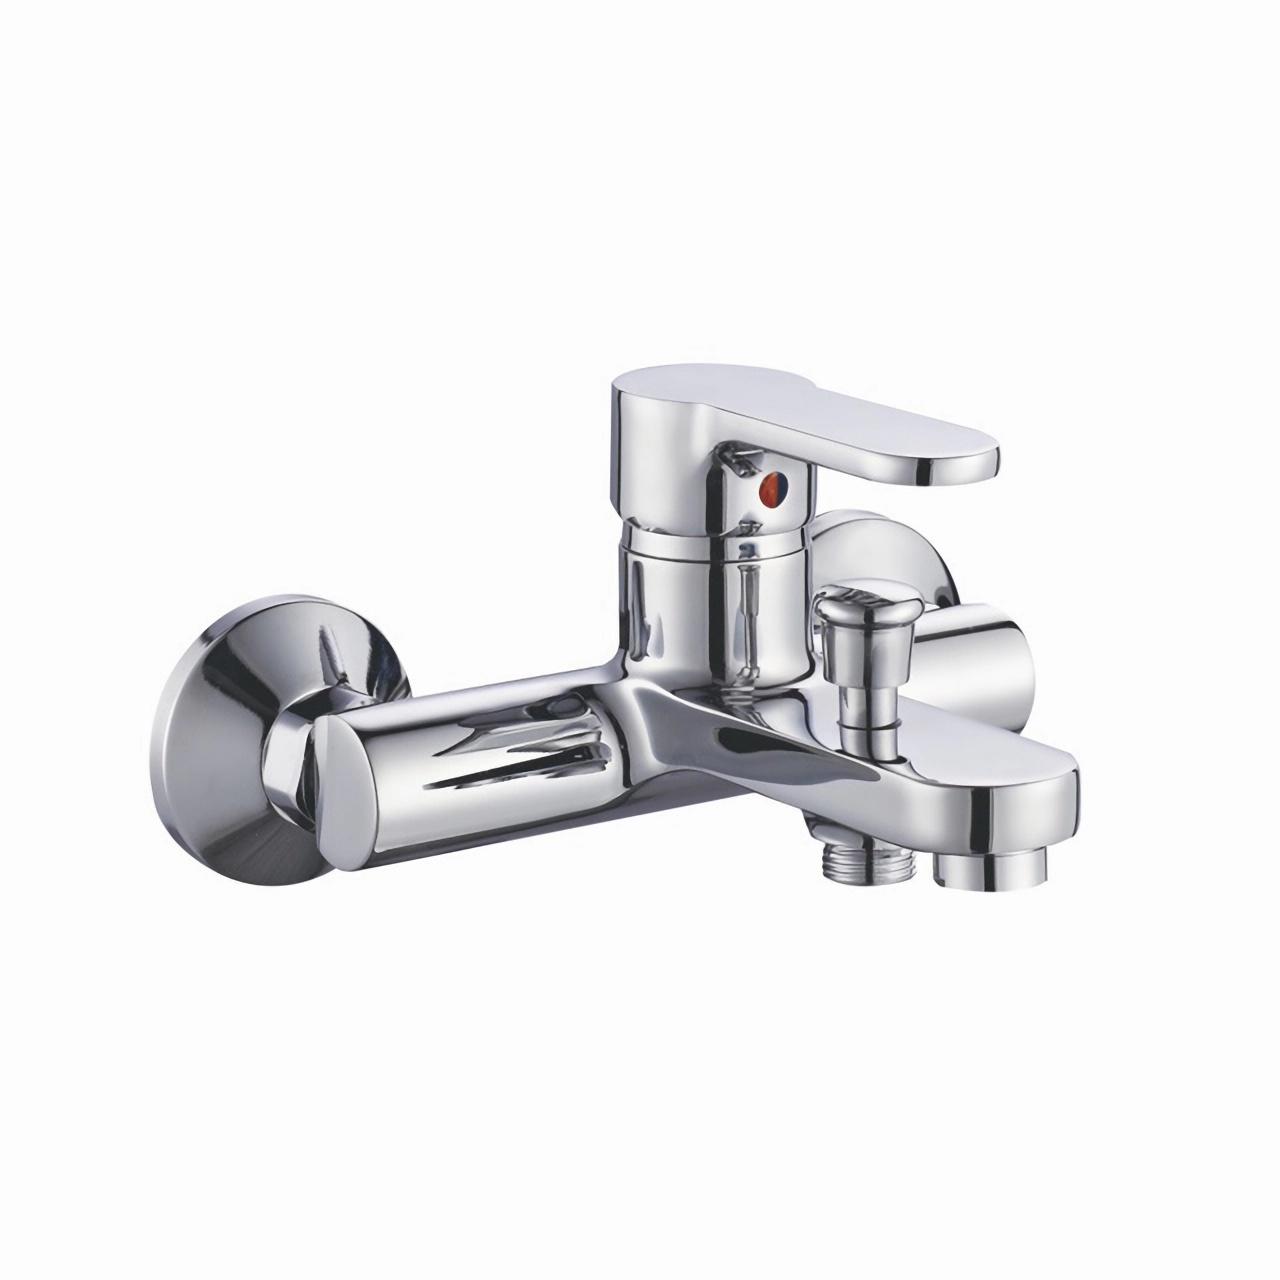 OJ-J2203H Bath Shower Faucets Tub Faucet Lavatory Basin Faucet Basin Spout Tap Wall Bathtub Faucets Faucet Set Household Zinc Alloy Shower Faucet